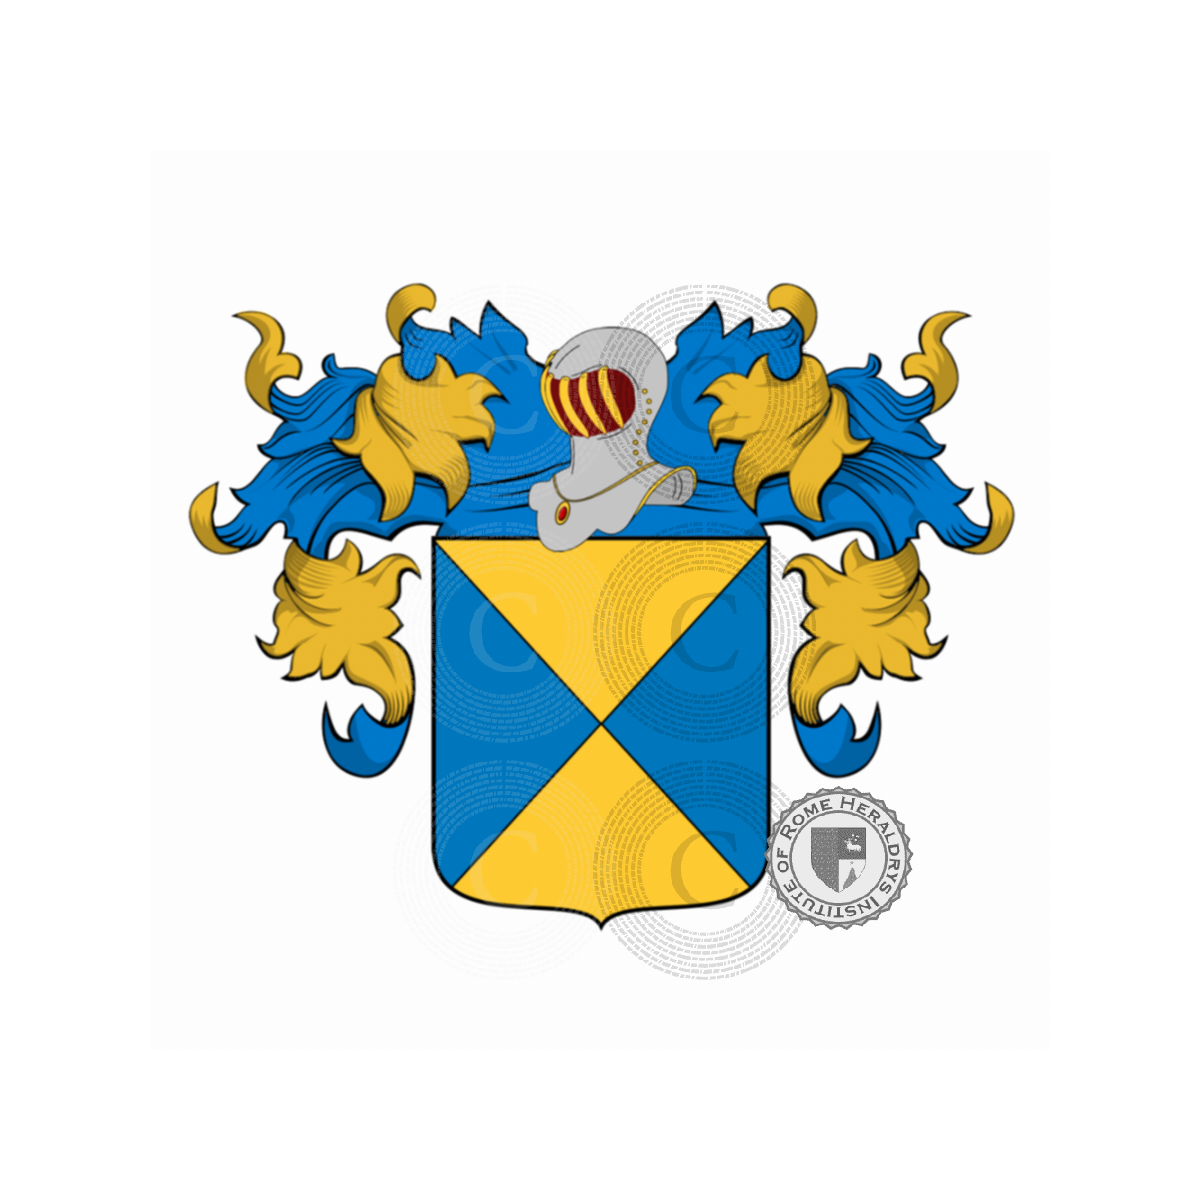 Escudo de la familiaGuidi, Guidi Cerreti,Guidi d'Anterigoli,Guidi da Pratovecchio,Guidi del Mugello,Guidi di Bagno,Guidi di Casavecchia,Magini,Segni Guidi